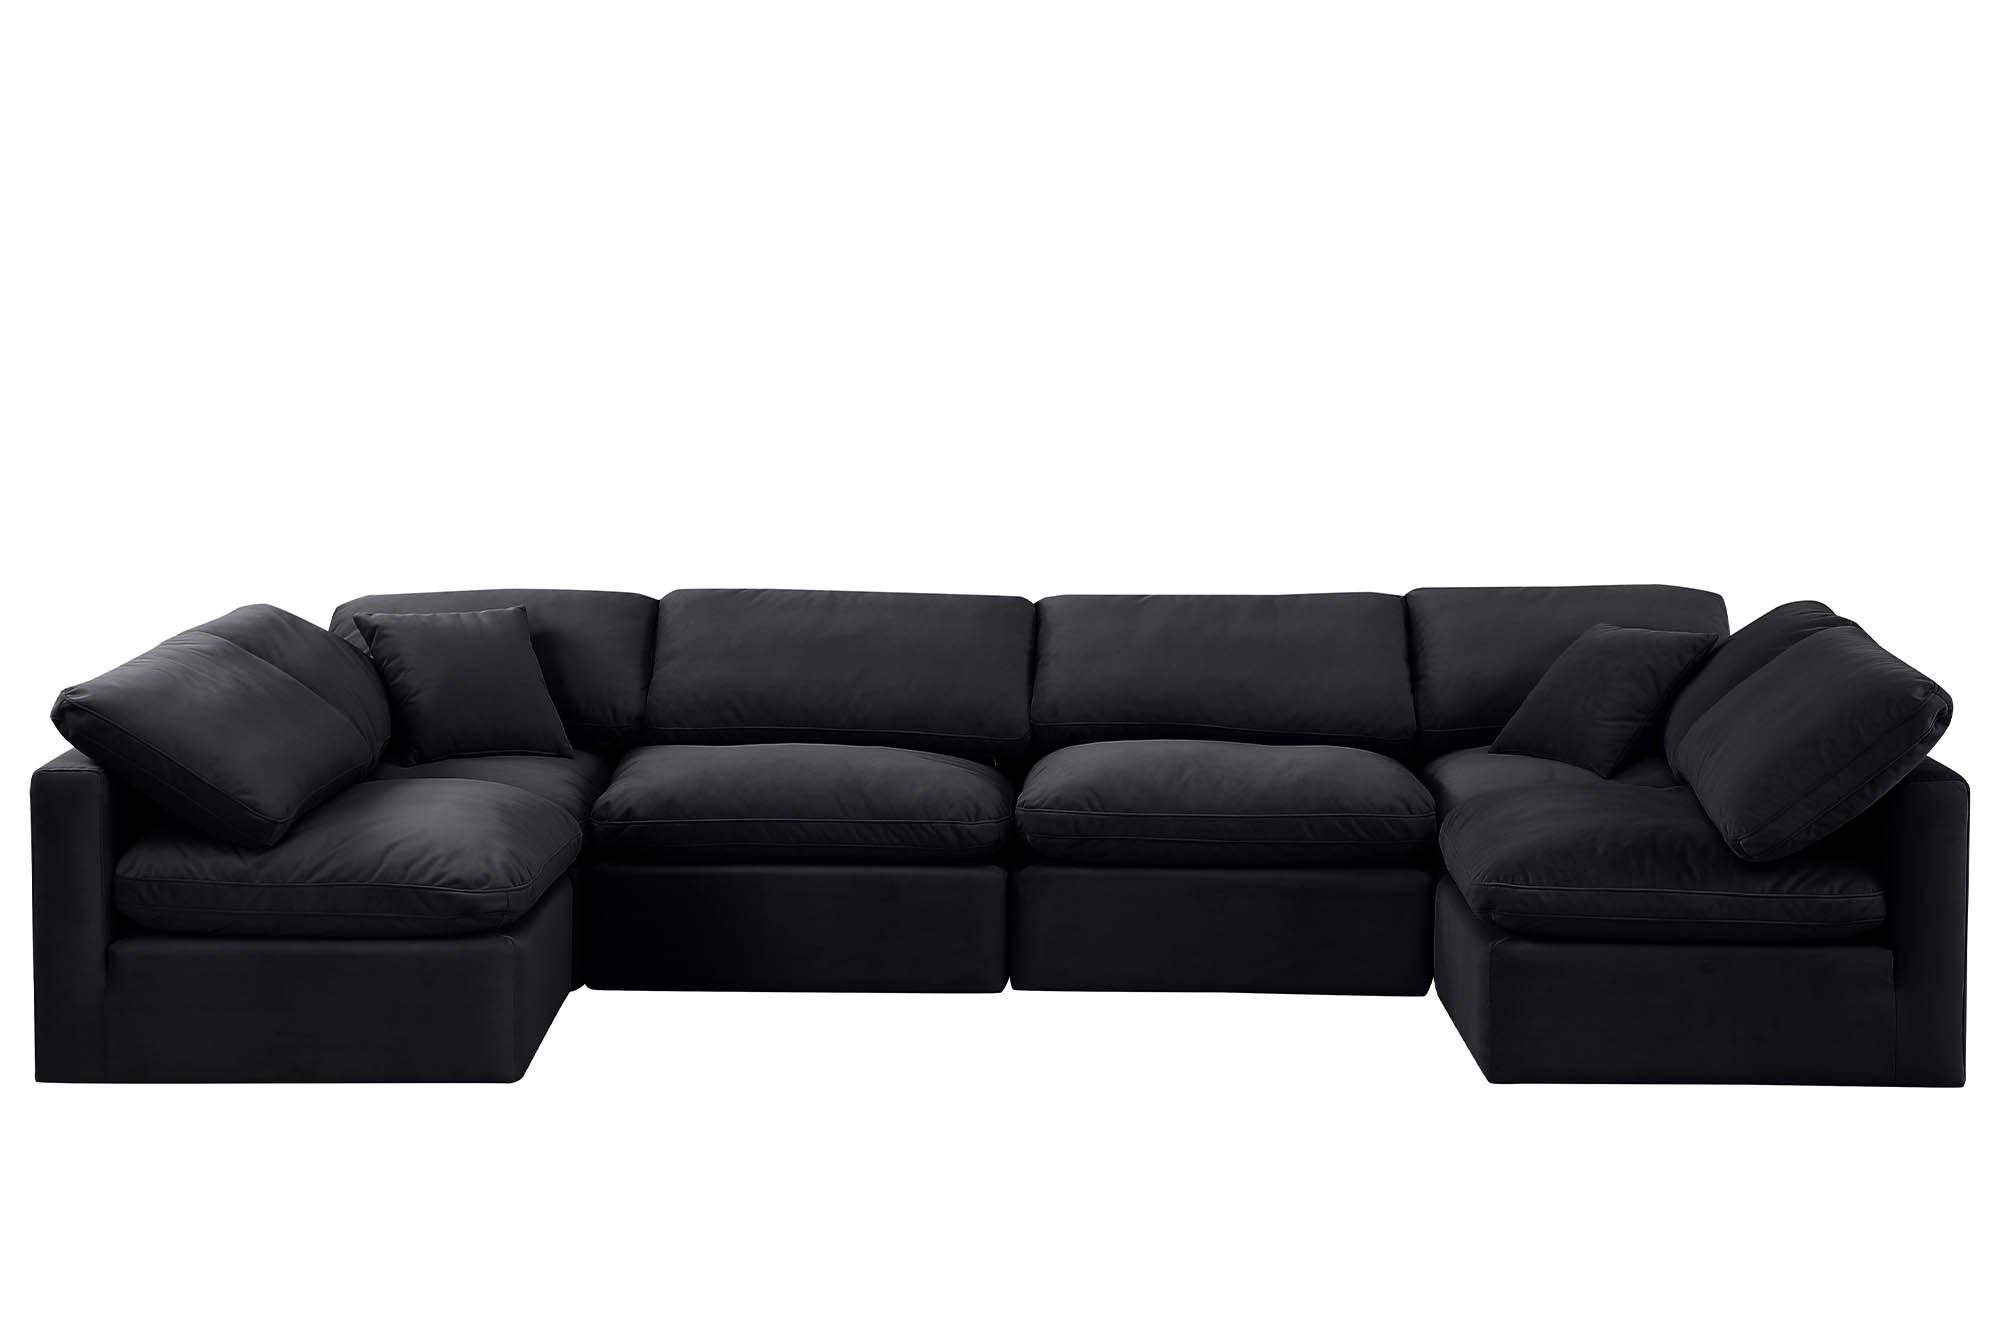 

    
Meridian Furniture INDULGE 147Black-Sec6D Modular Sectional Sofa Black 147Black-Sec6D
